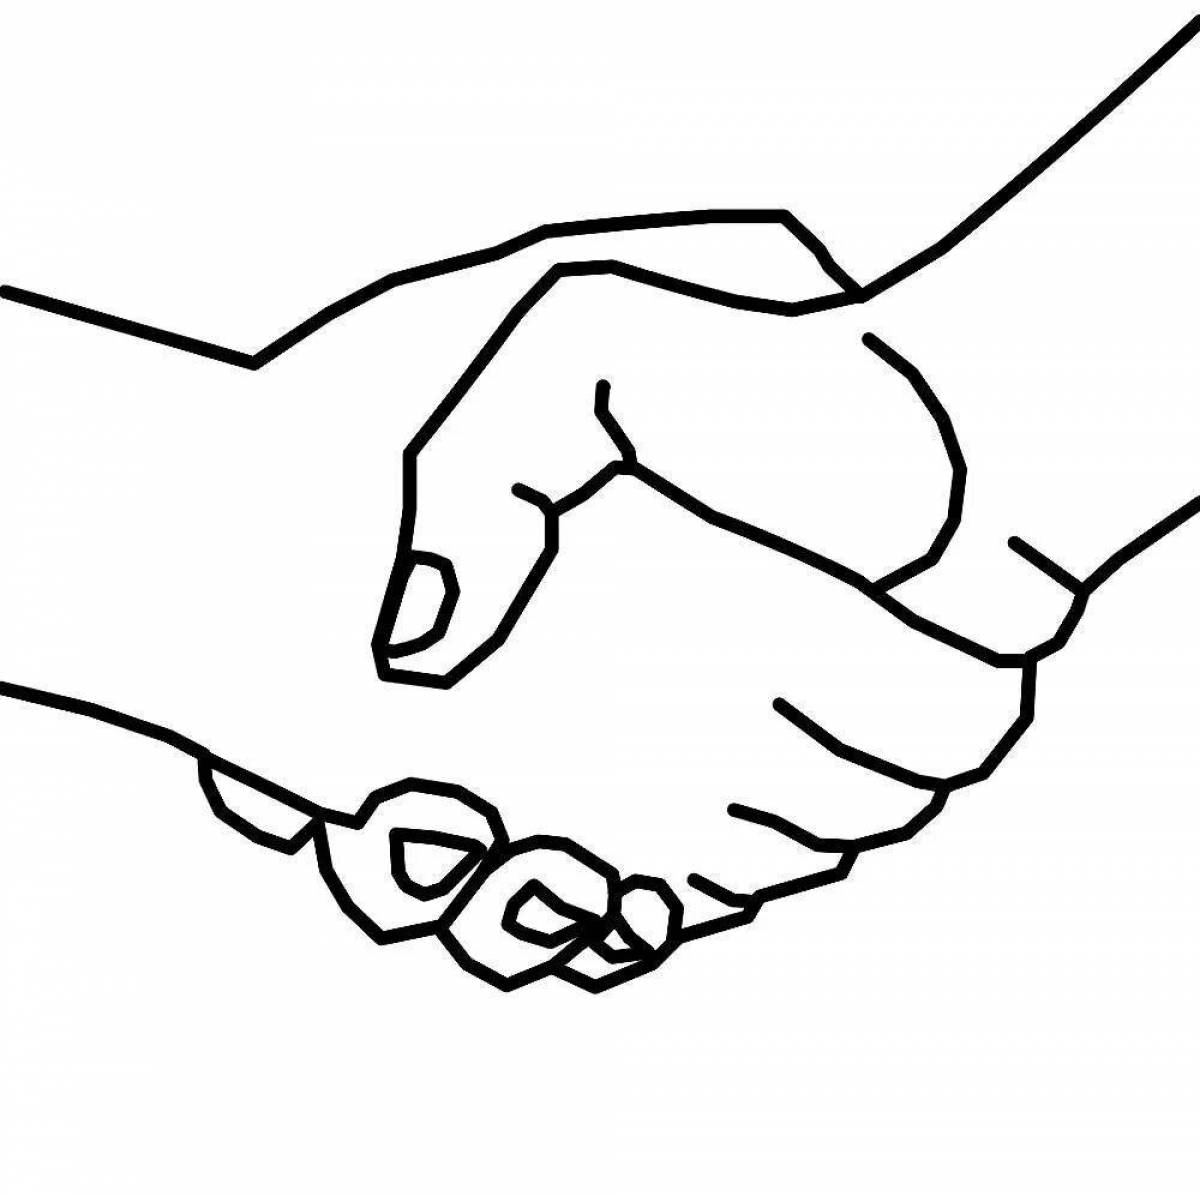 Handshake #6